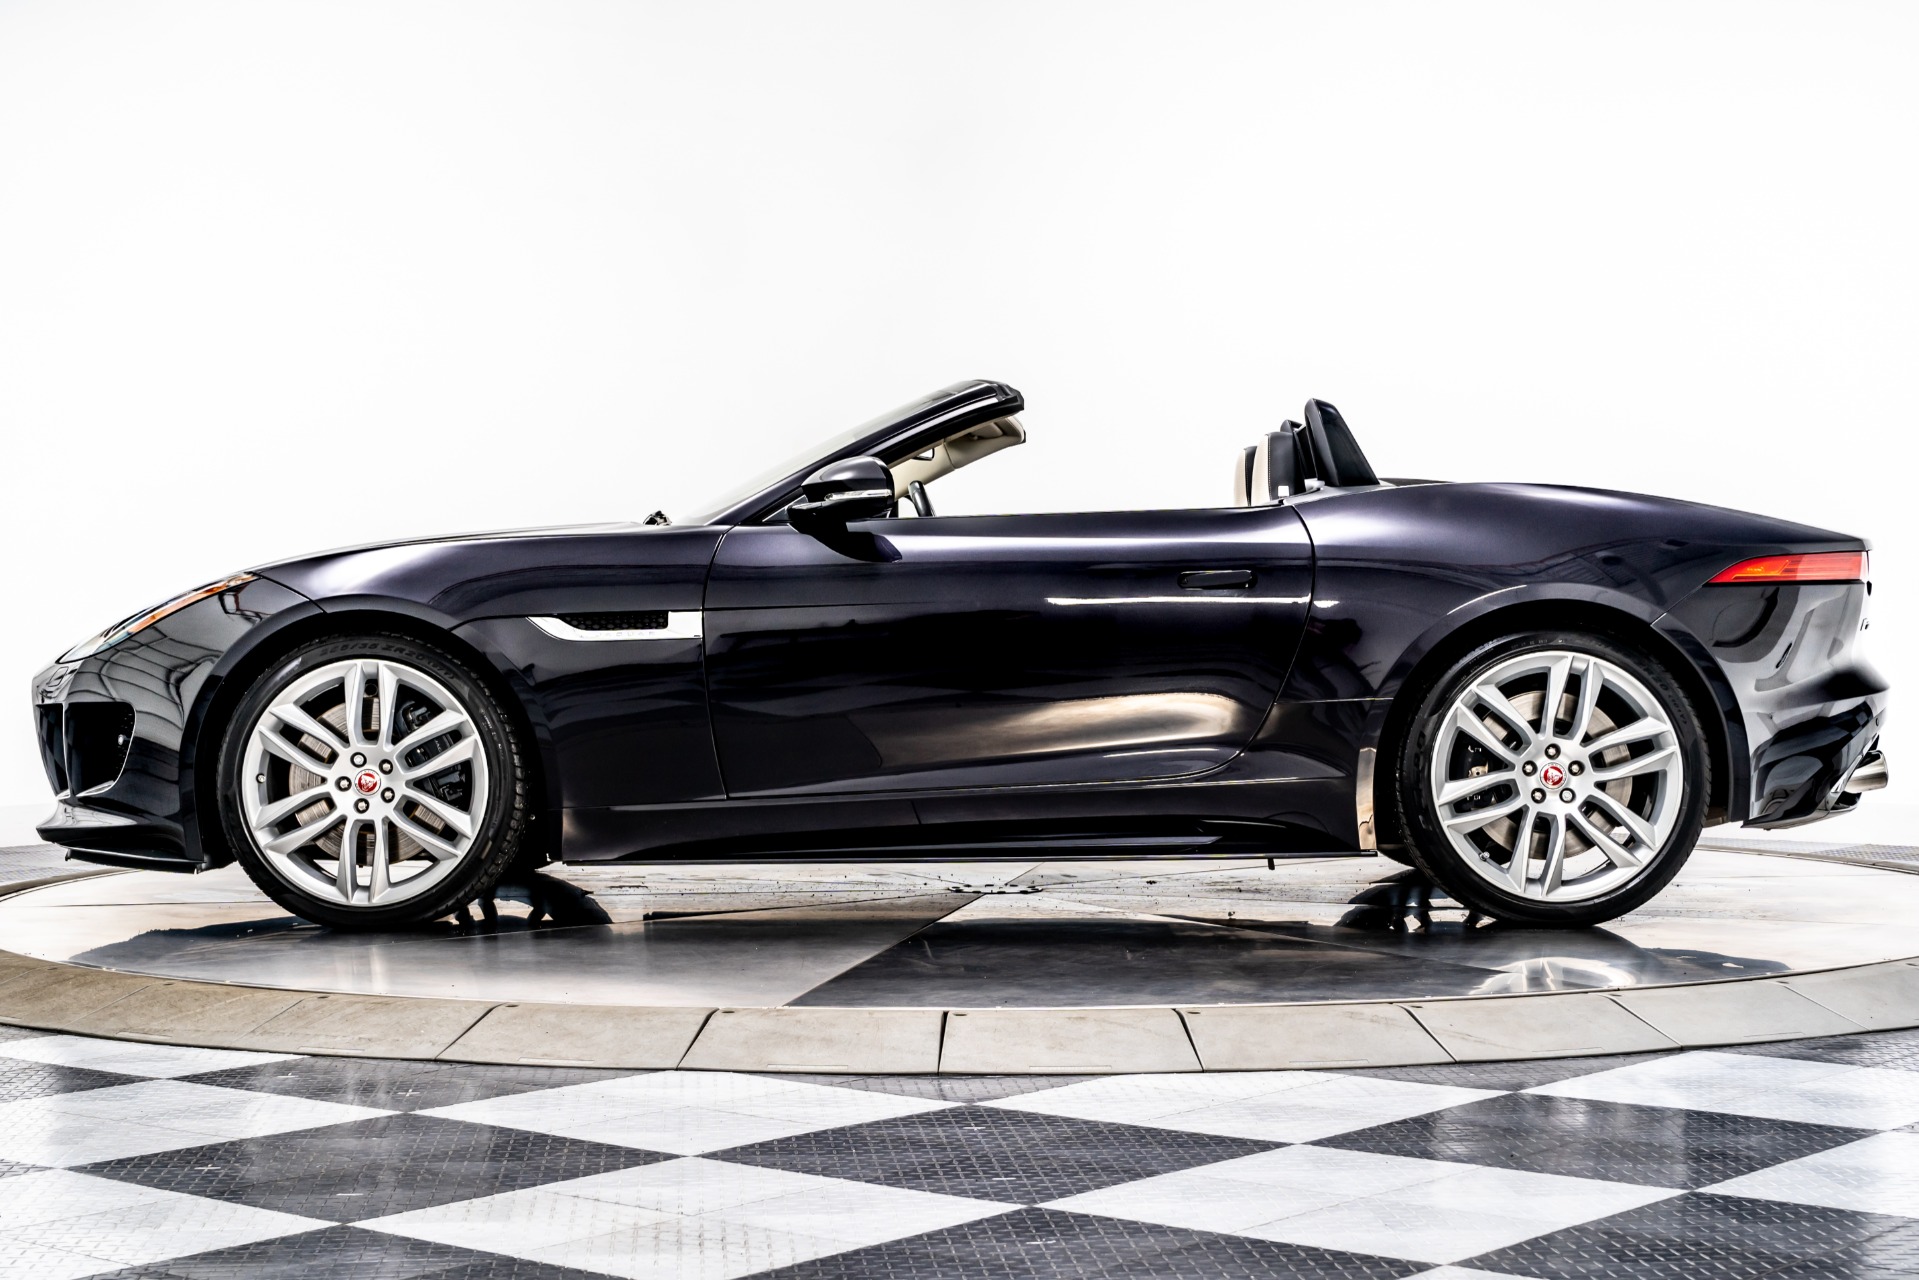 A Duo of Jaguar F-TYPE SVR GT4 Race Cars Up for Sale